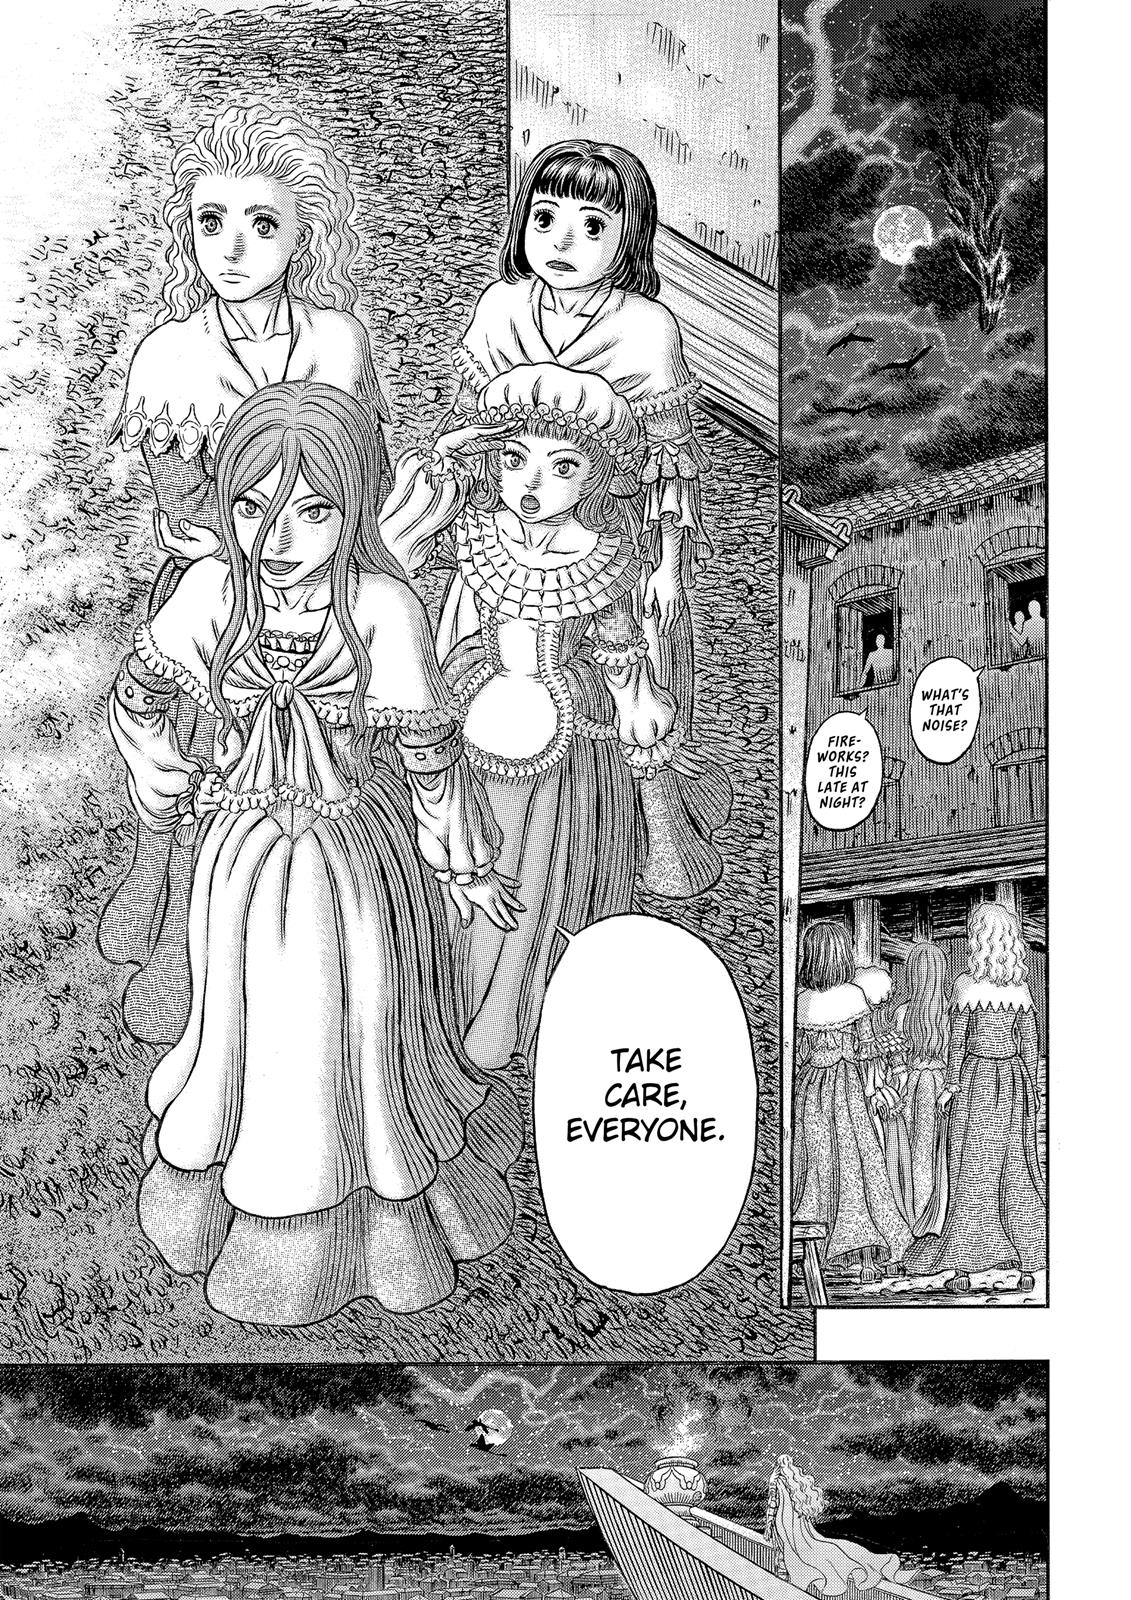 Berserk Manga Chapter 341 image 20